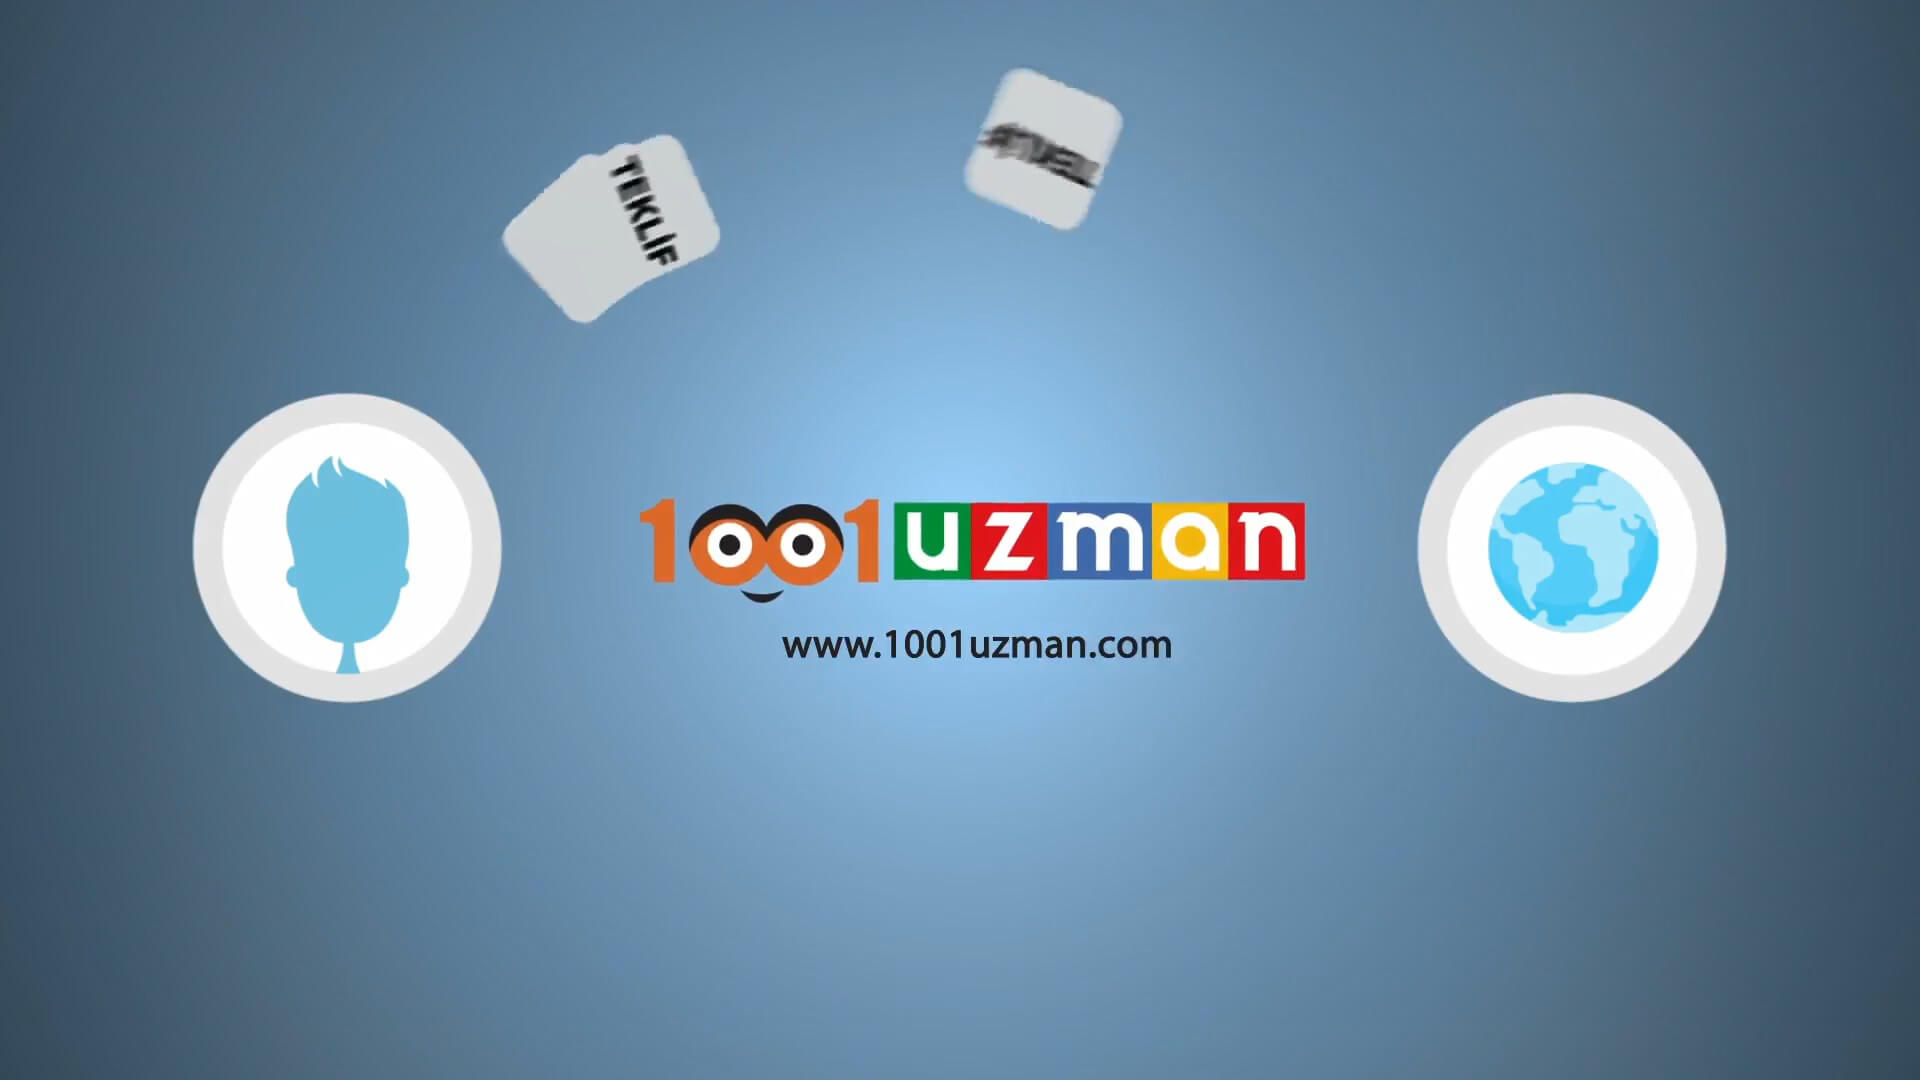 1001Uzman1 - Animasyon ile Kurumsal Tanıtım